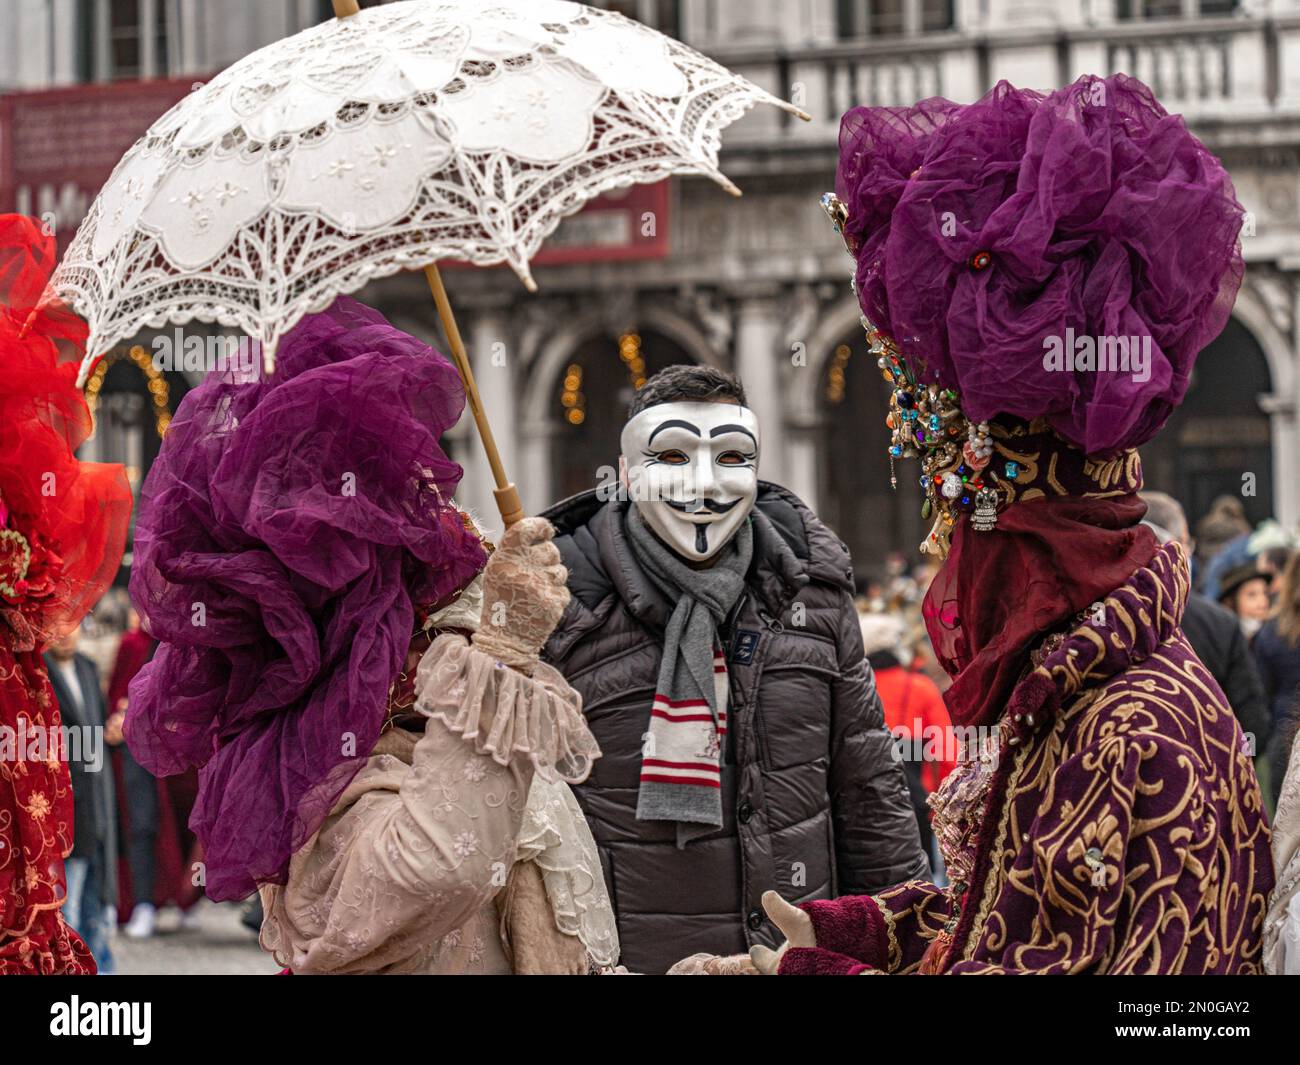 Karneval In Venedig. Ein Mann mit anonymer Maske posiert mit einer kostümierten maskierten Frau mit einem Sonnenschirm und einem kostümierten maskierten Mann mit einem Hut mit Edelsteinen Stockfoto